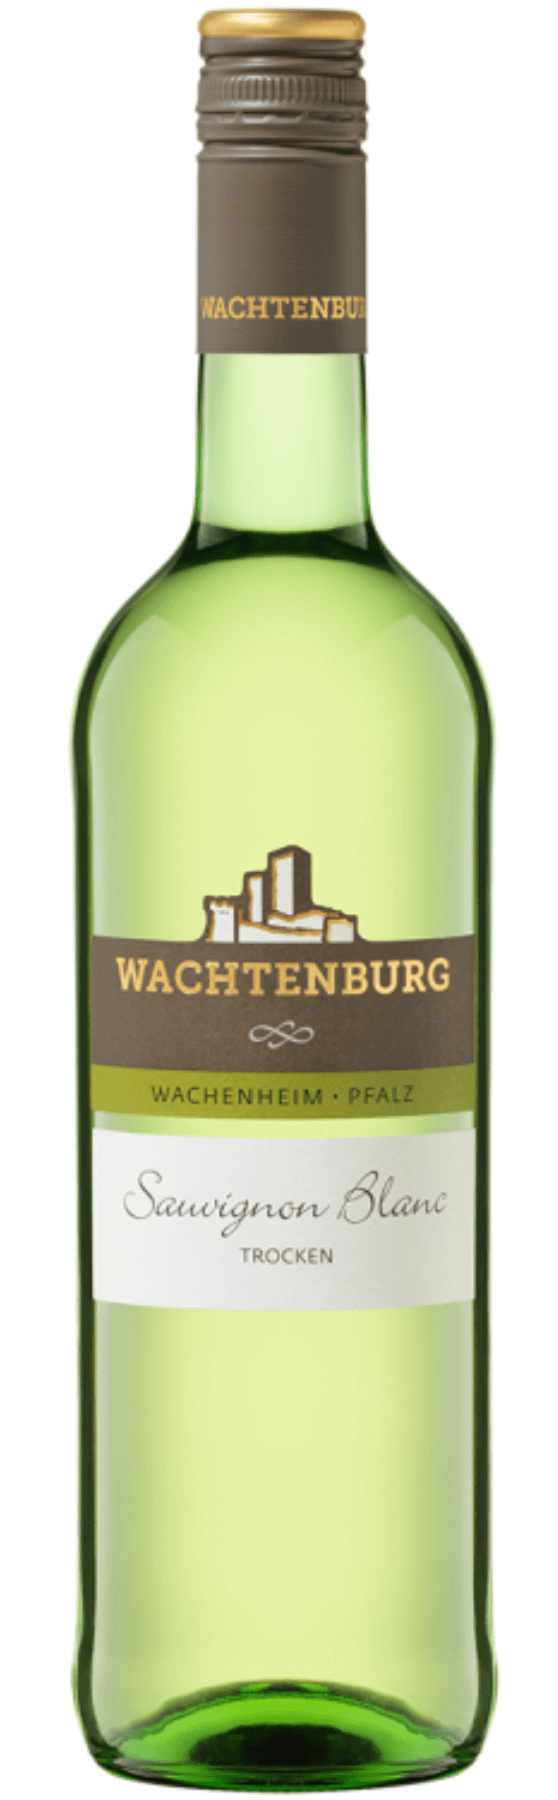 Wachtenburg Sauvignon Blanc trocken